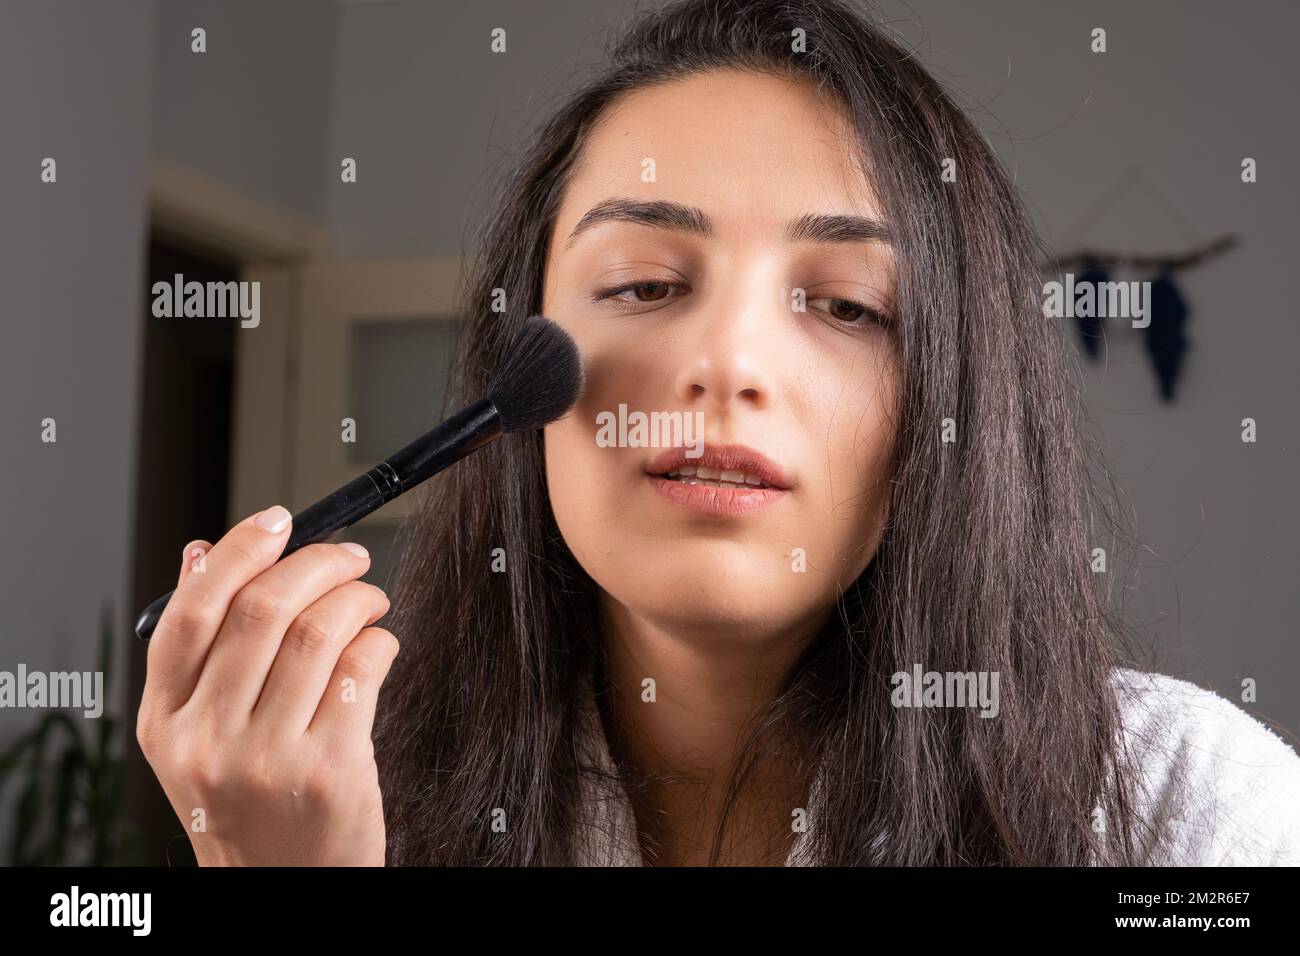 Belle brunette caucasienne fille tenant la brosse de maquillage. Rafraîchir son maquillage pour la nuit. Ouvrez doucement la bouche. Profitez de sa peau et de sa beauté. Banque D'Images